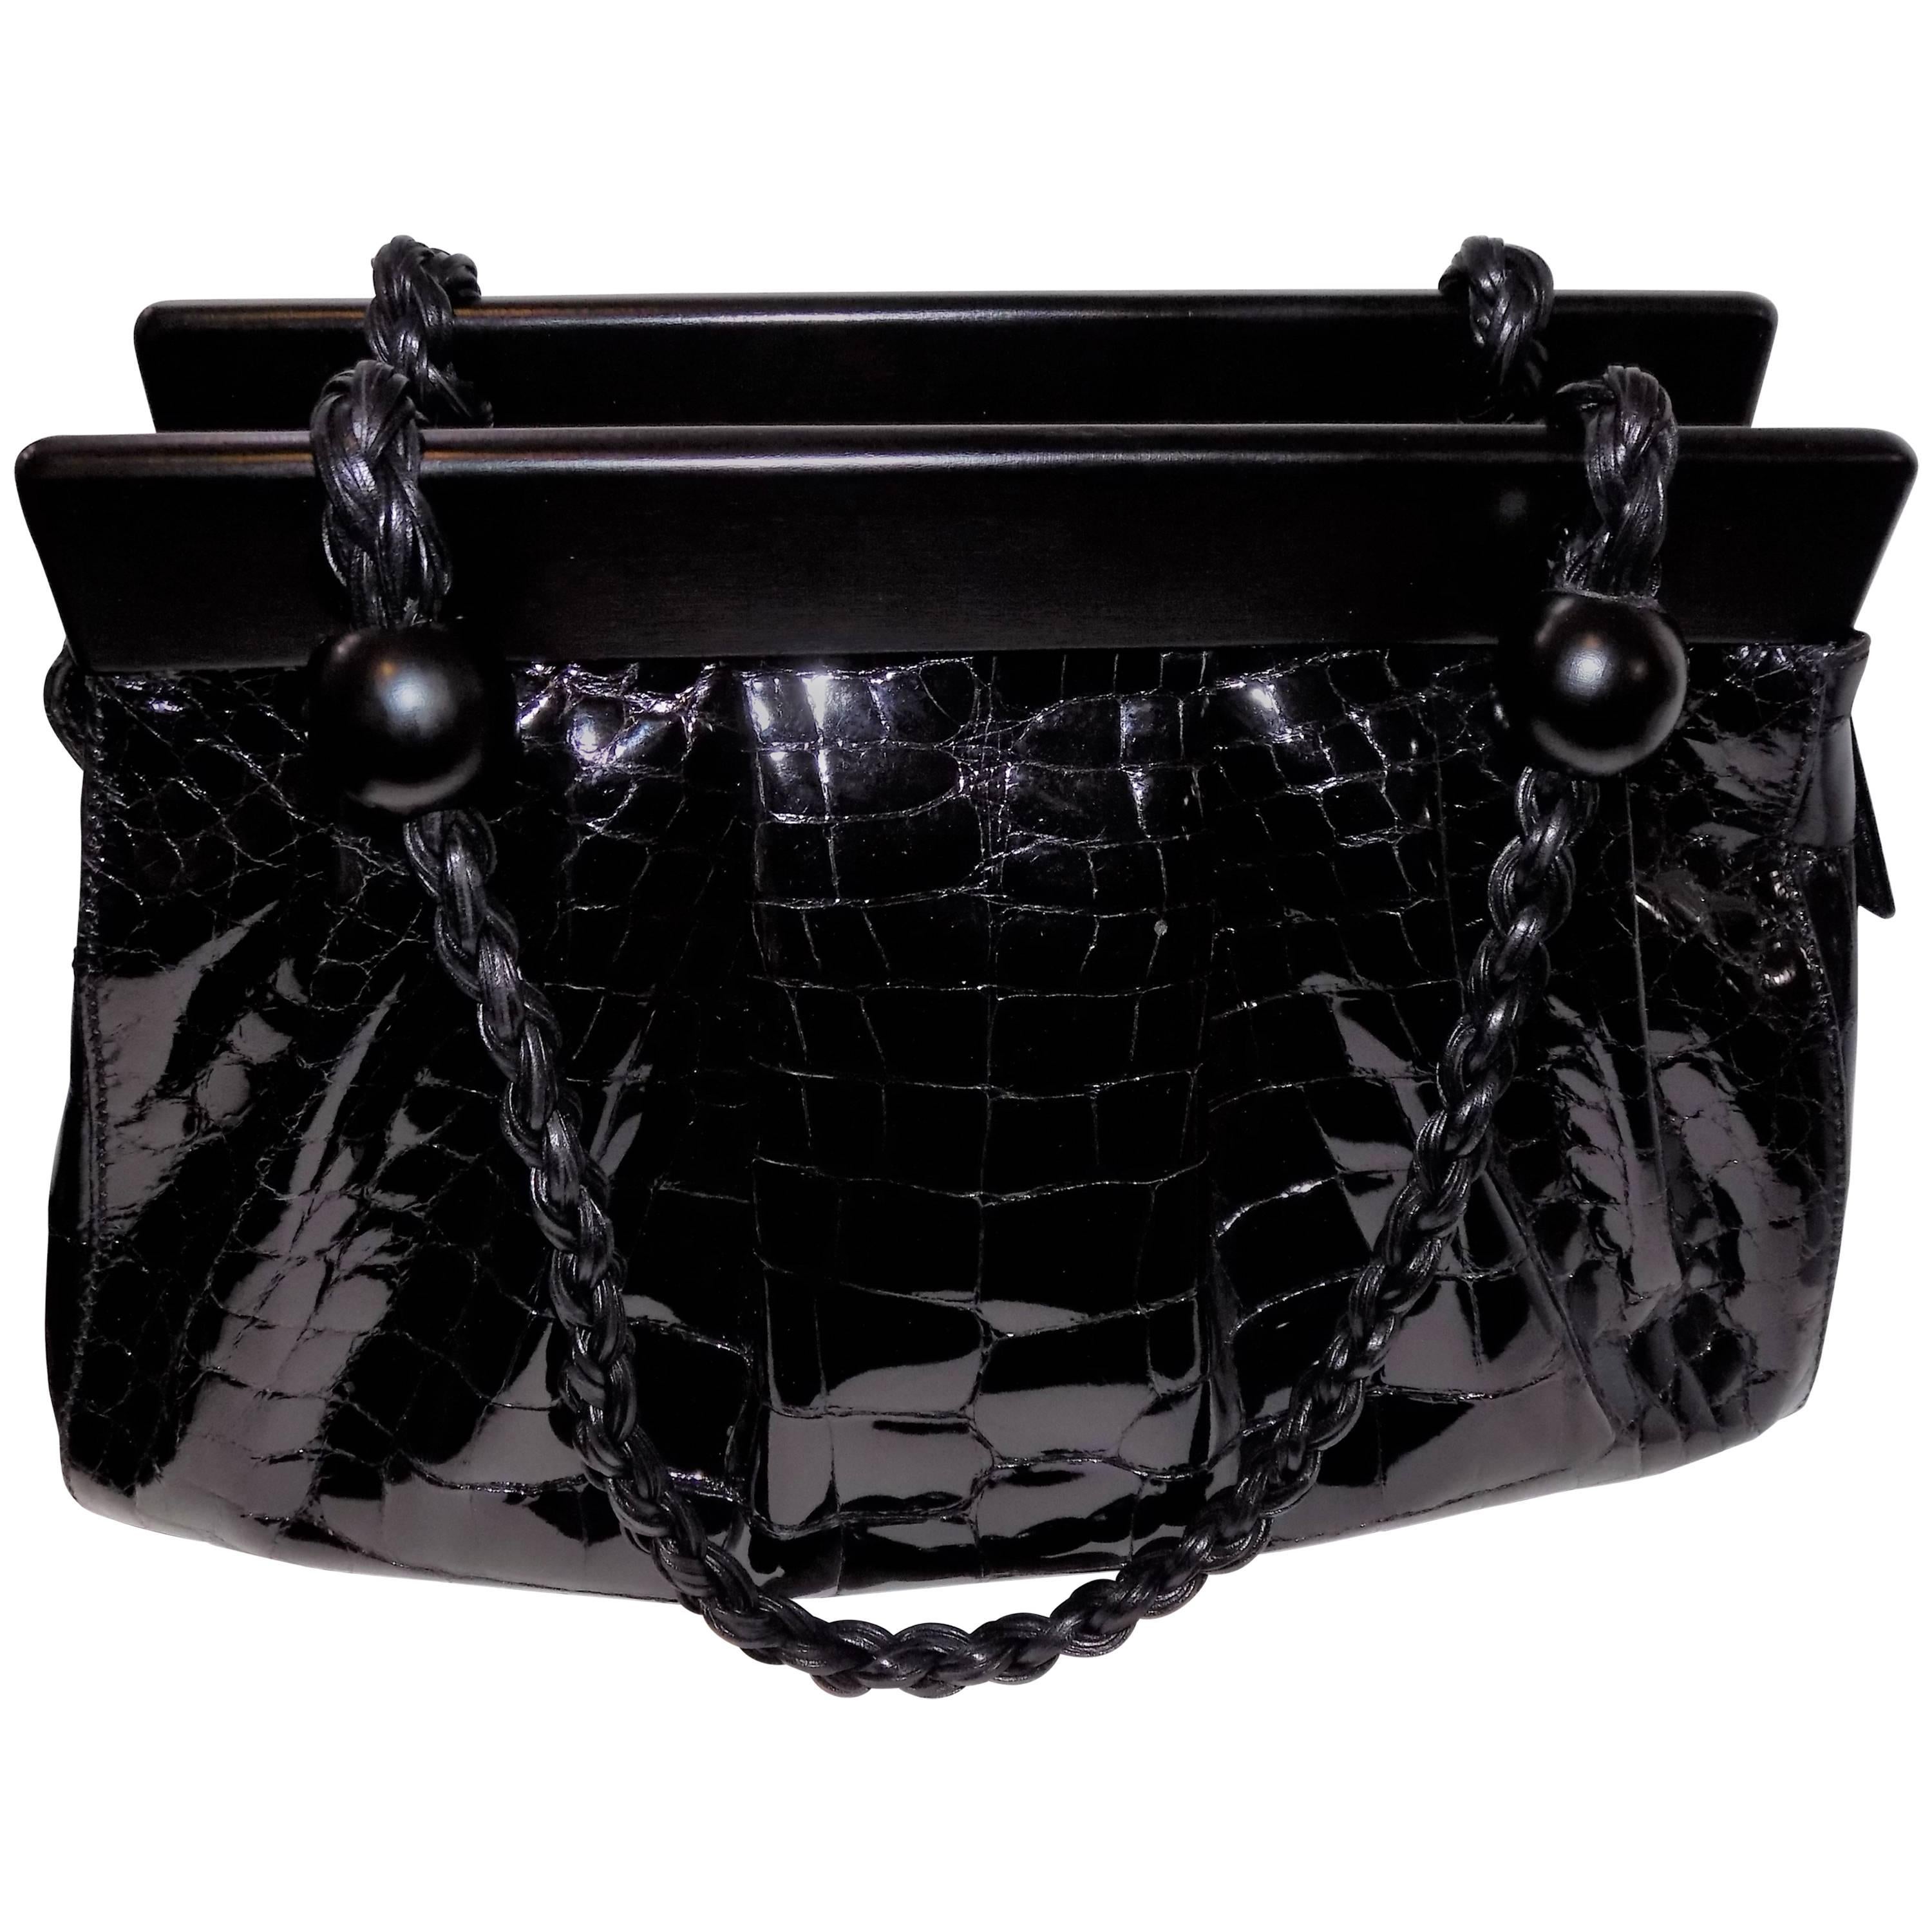  Stunning Suarez Real Alligator black bag ret $6975 with ebony frame  For Sale